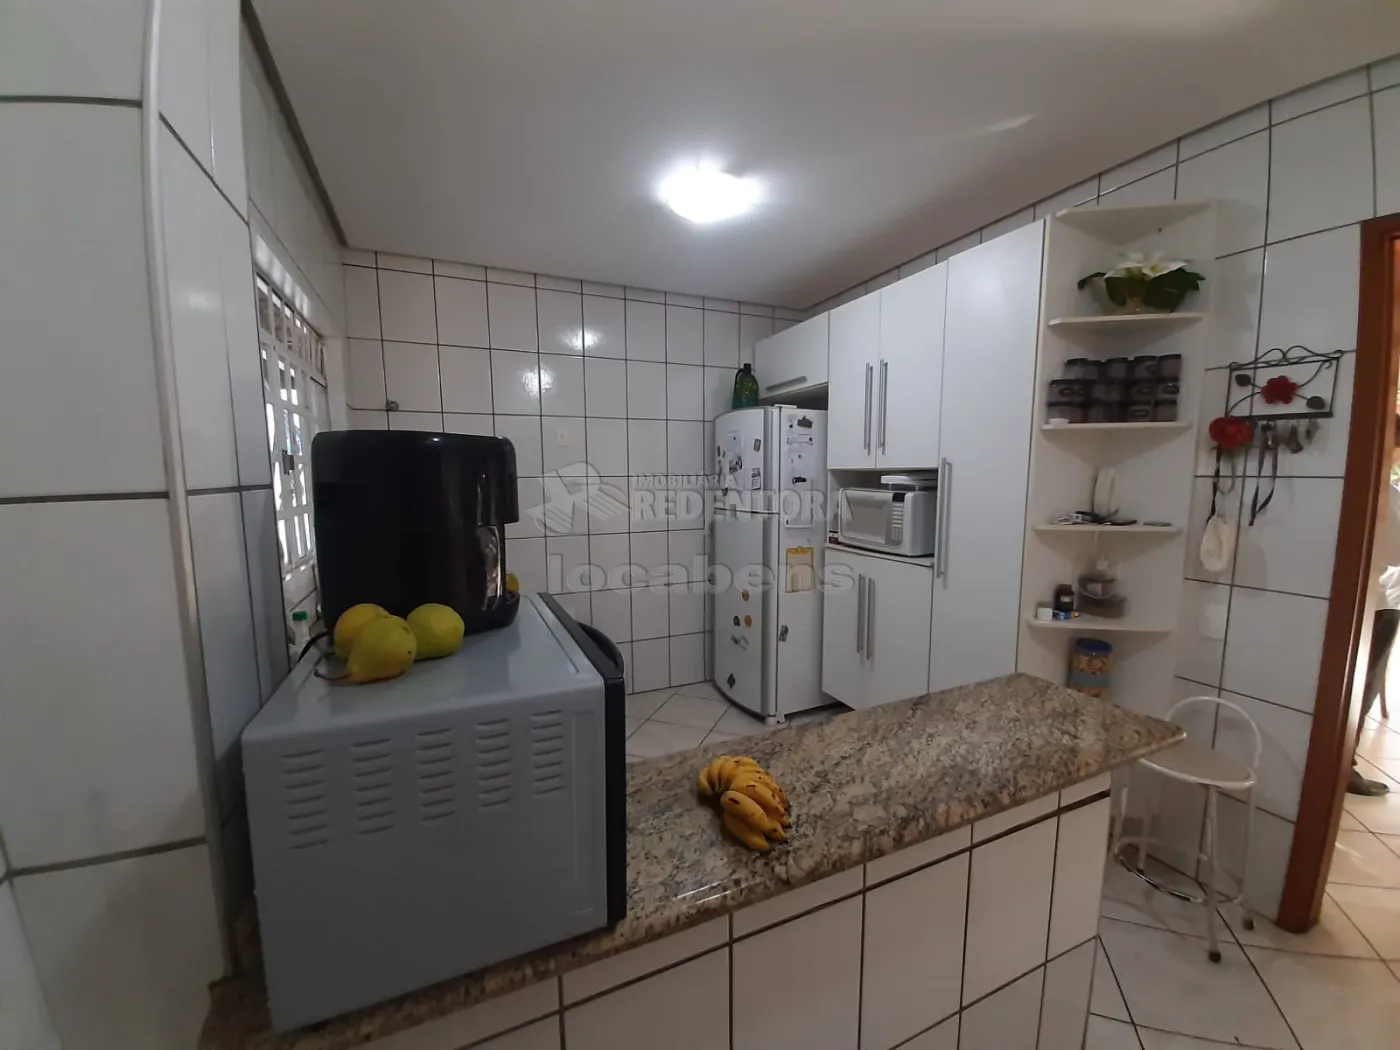 Comprar Casa / Padrão em São José do Rio Preto R$ 330.000,00 - Foto 9